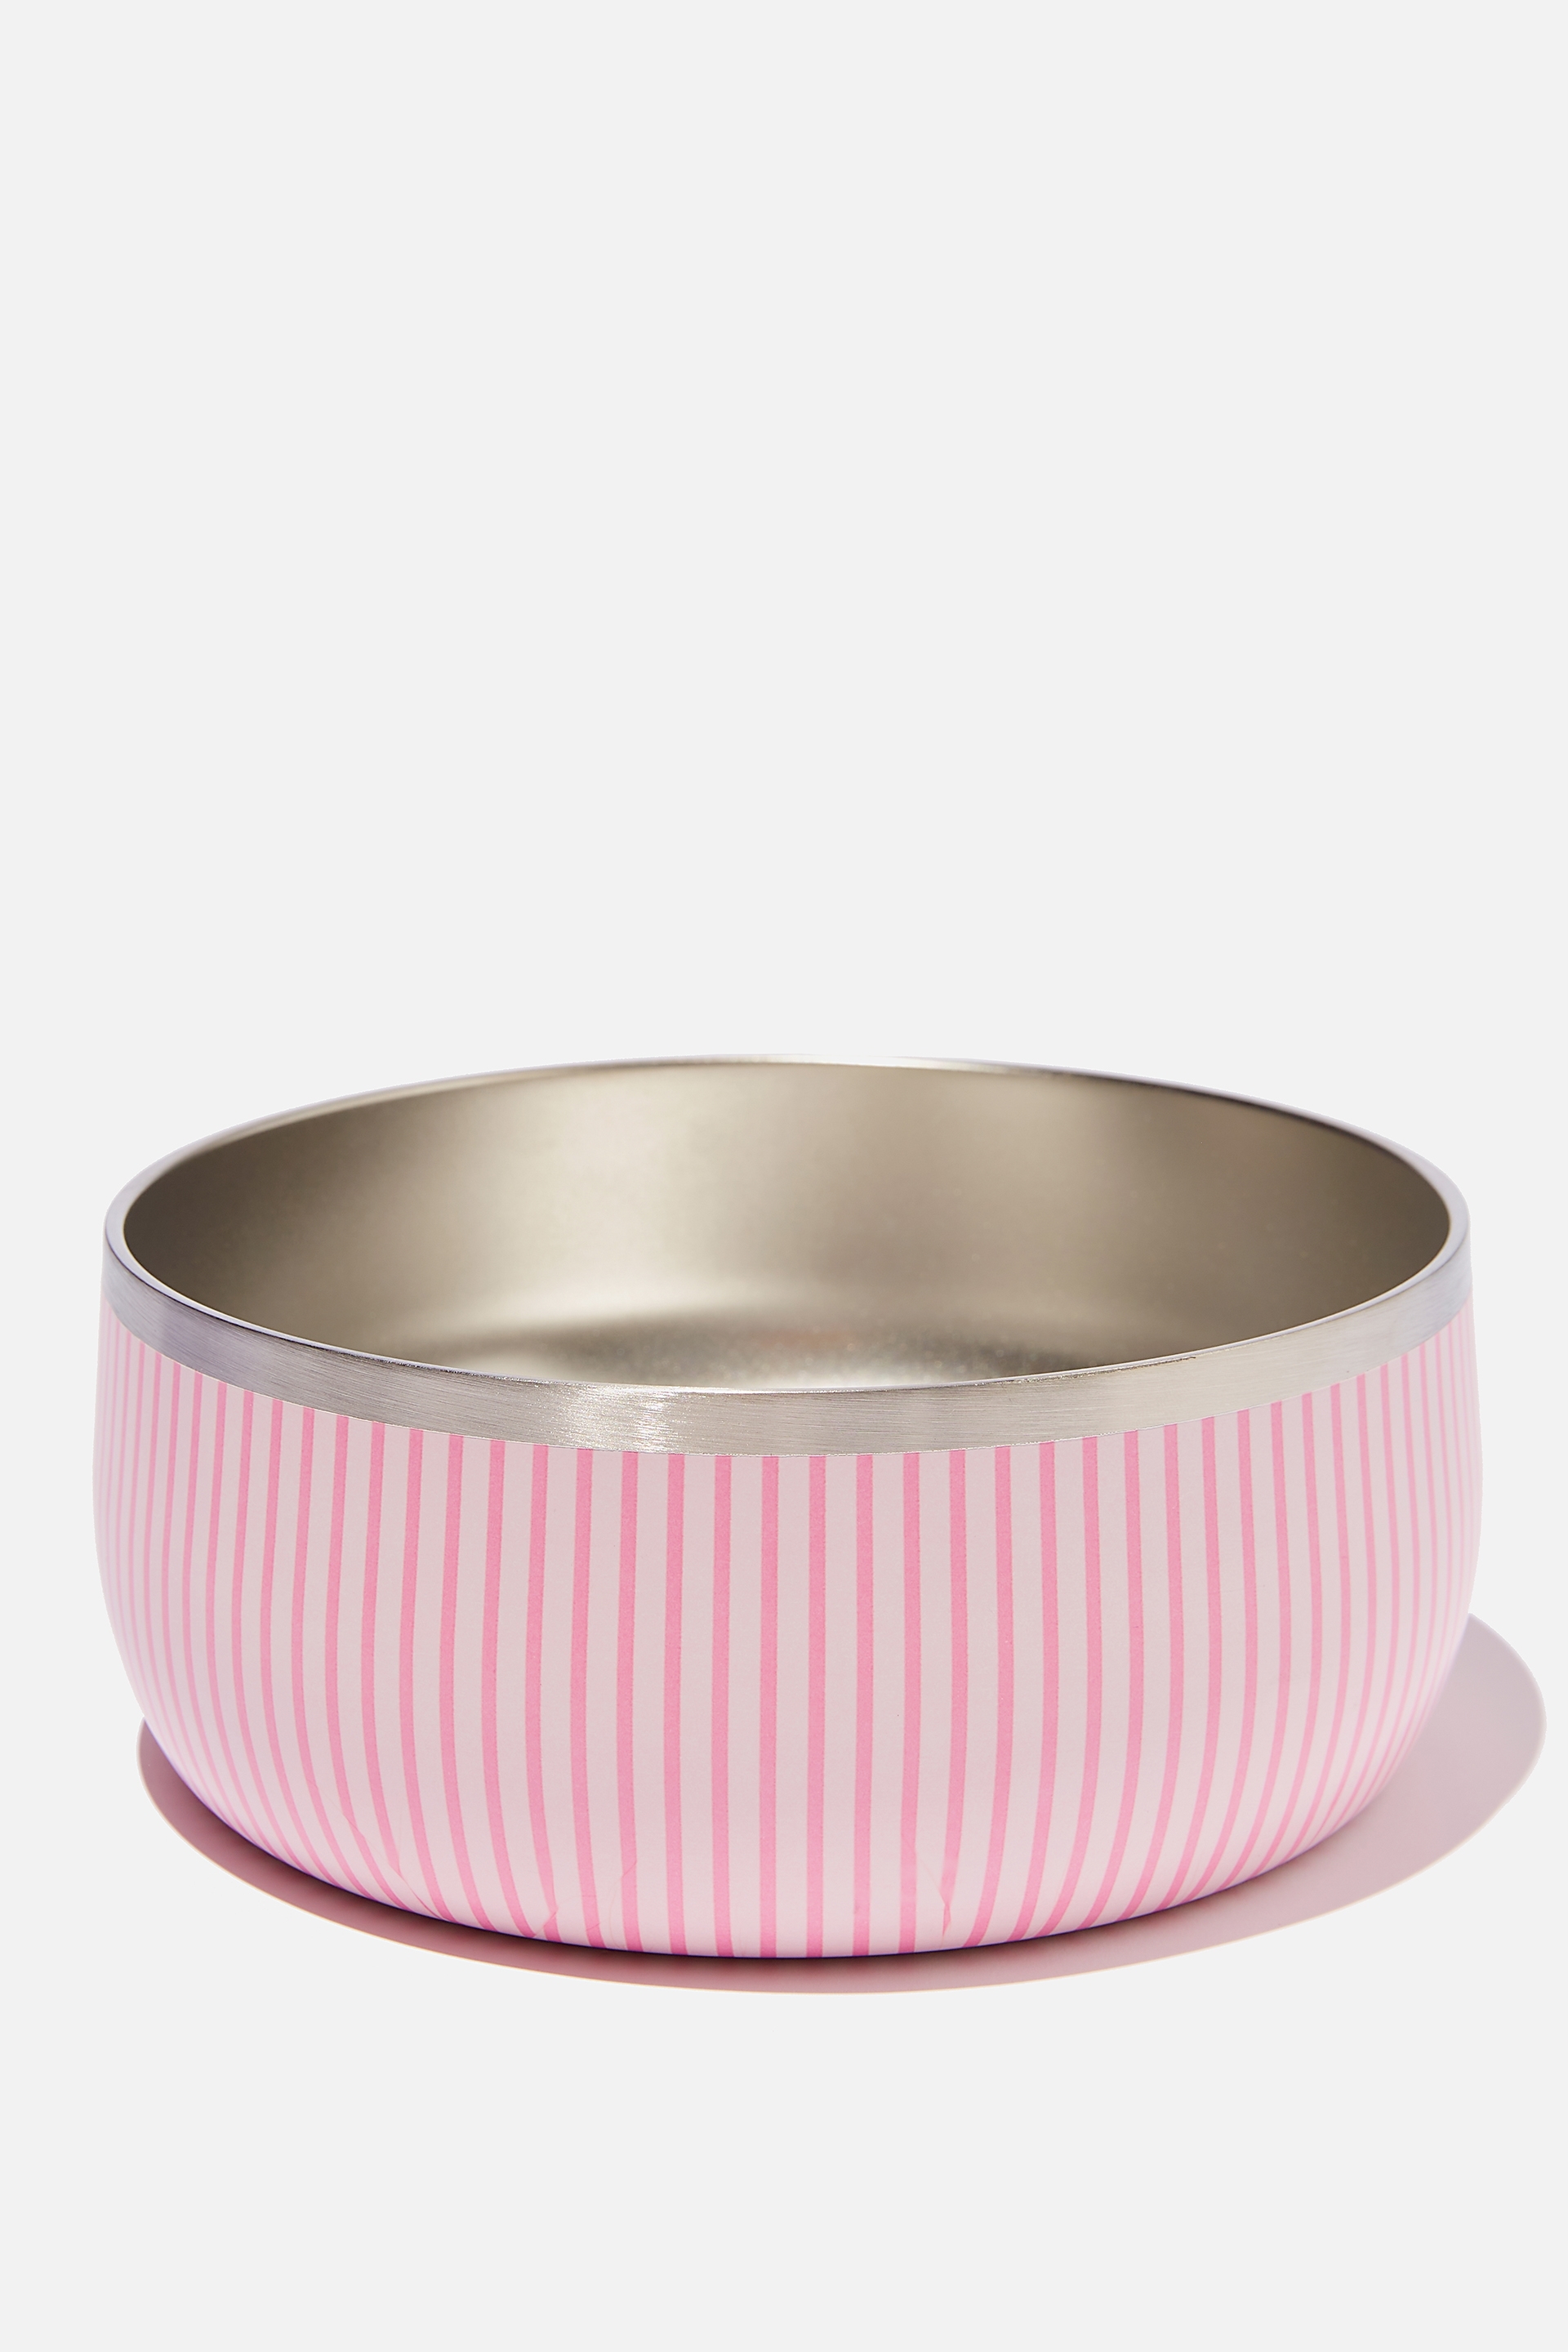 Typo - Pet Club Premium Dog Bowl - Large - Parker stripe pink